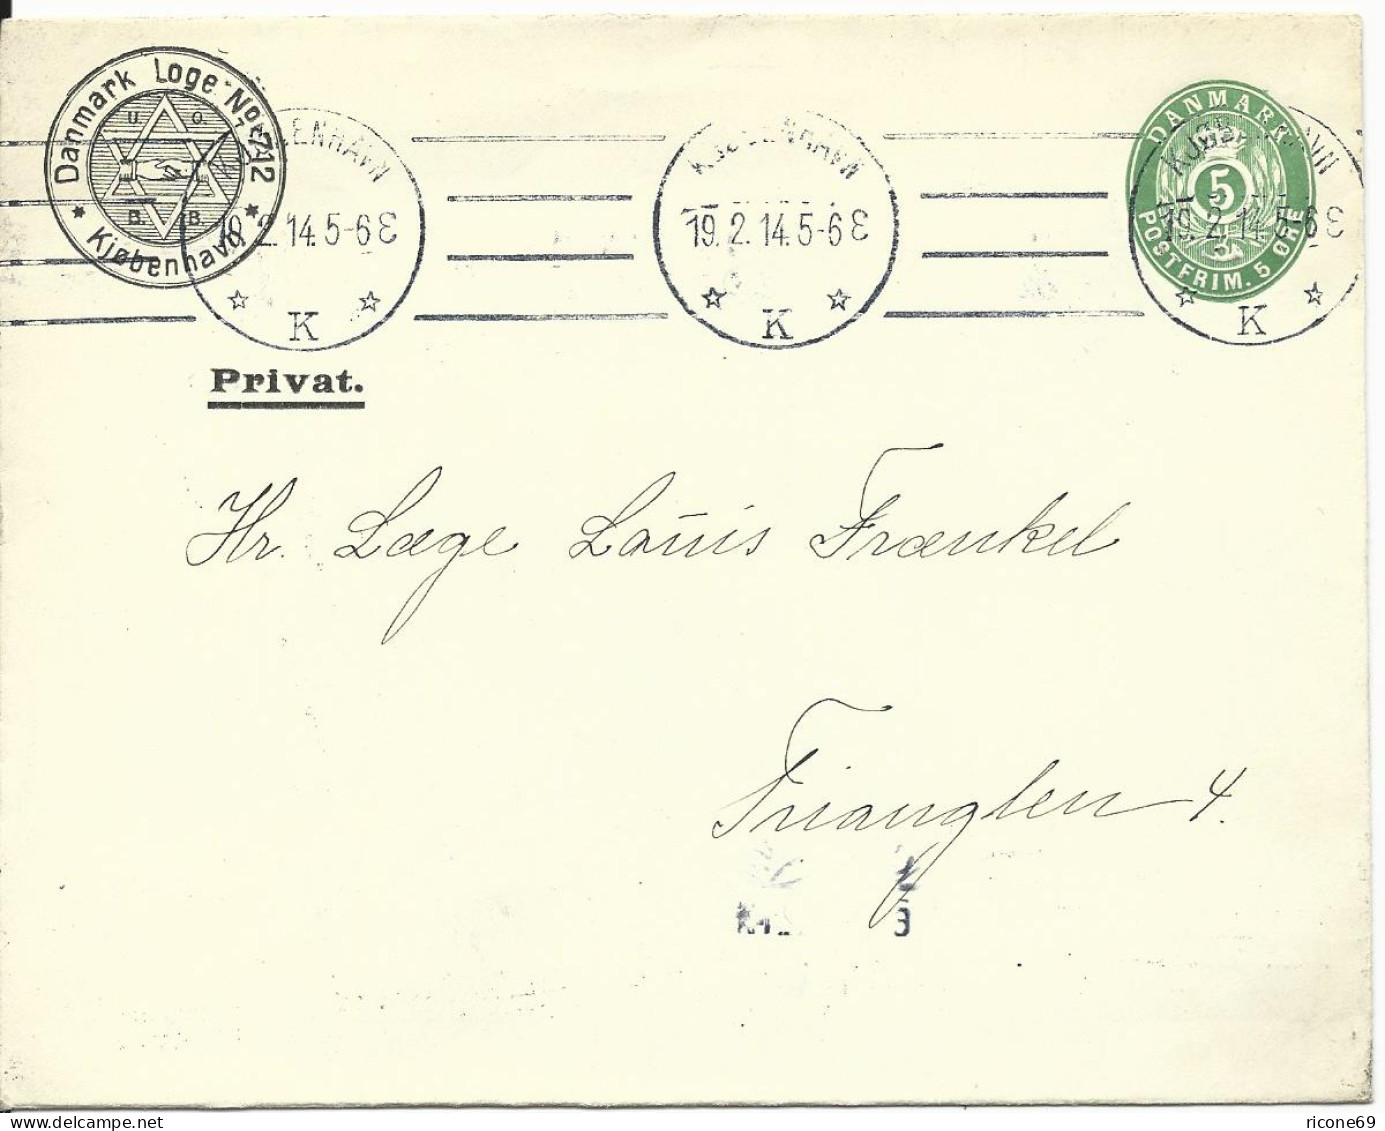 Dänemark 1914, 5 öre Ganzsache Brief M. Danmark Loge No.712 Judaika Zudruck - Judaisme